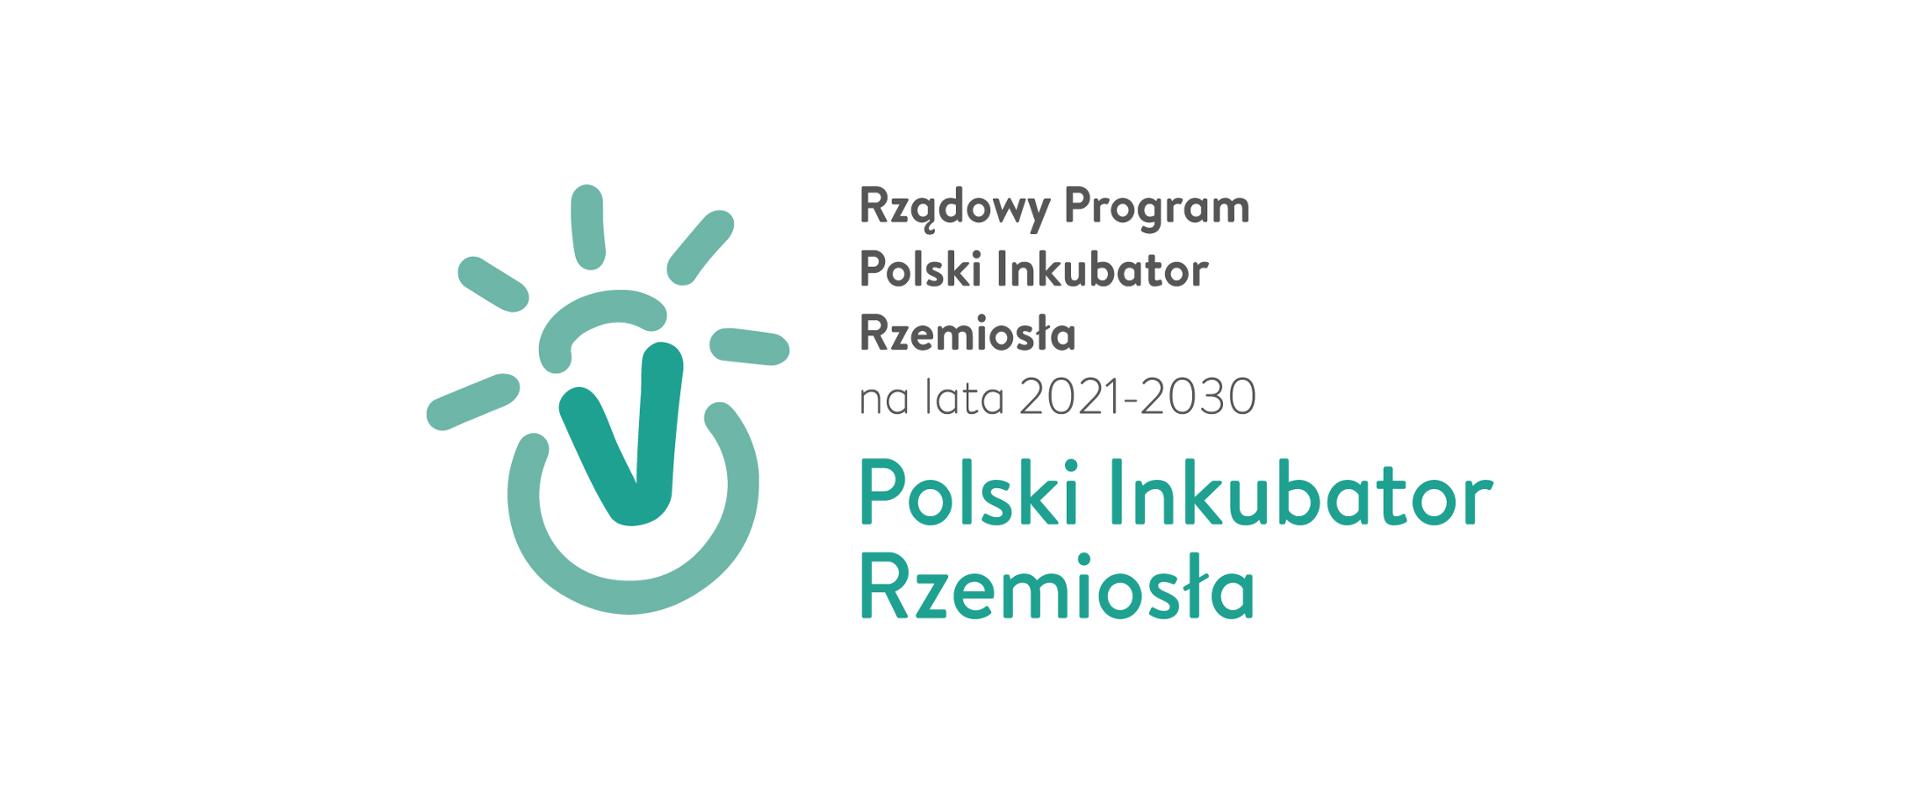 Po lewej stronie w kolorze zielonym żarówka wystająca z za okręgu, po prawej stronie napis Rządowy Program Polski Inkubator Rzemiosła na lata 2021-2030 Polski Inkubator Rzemiosła